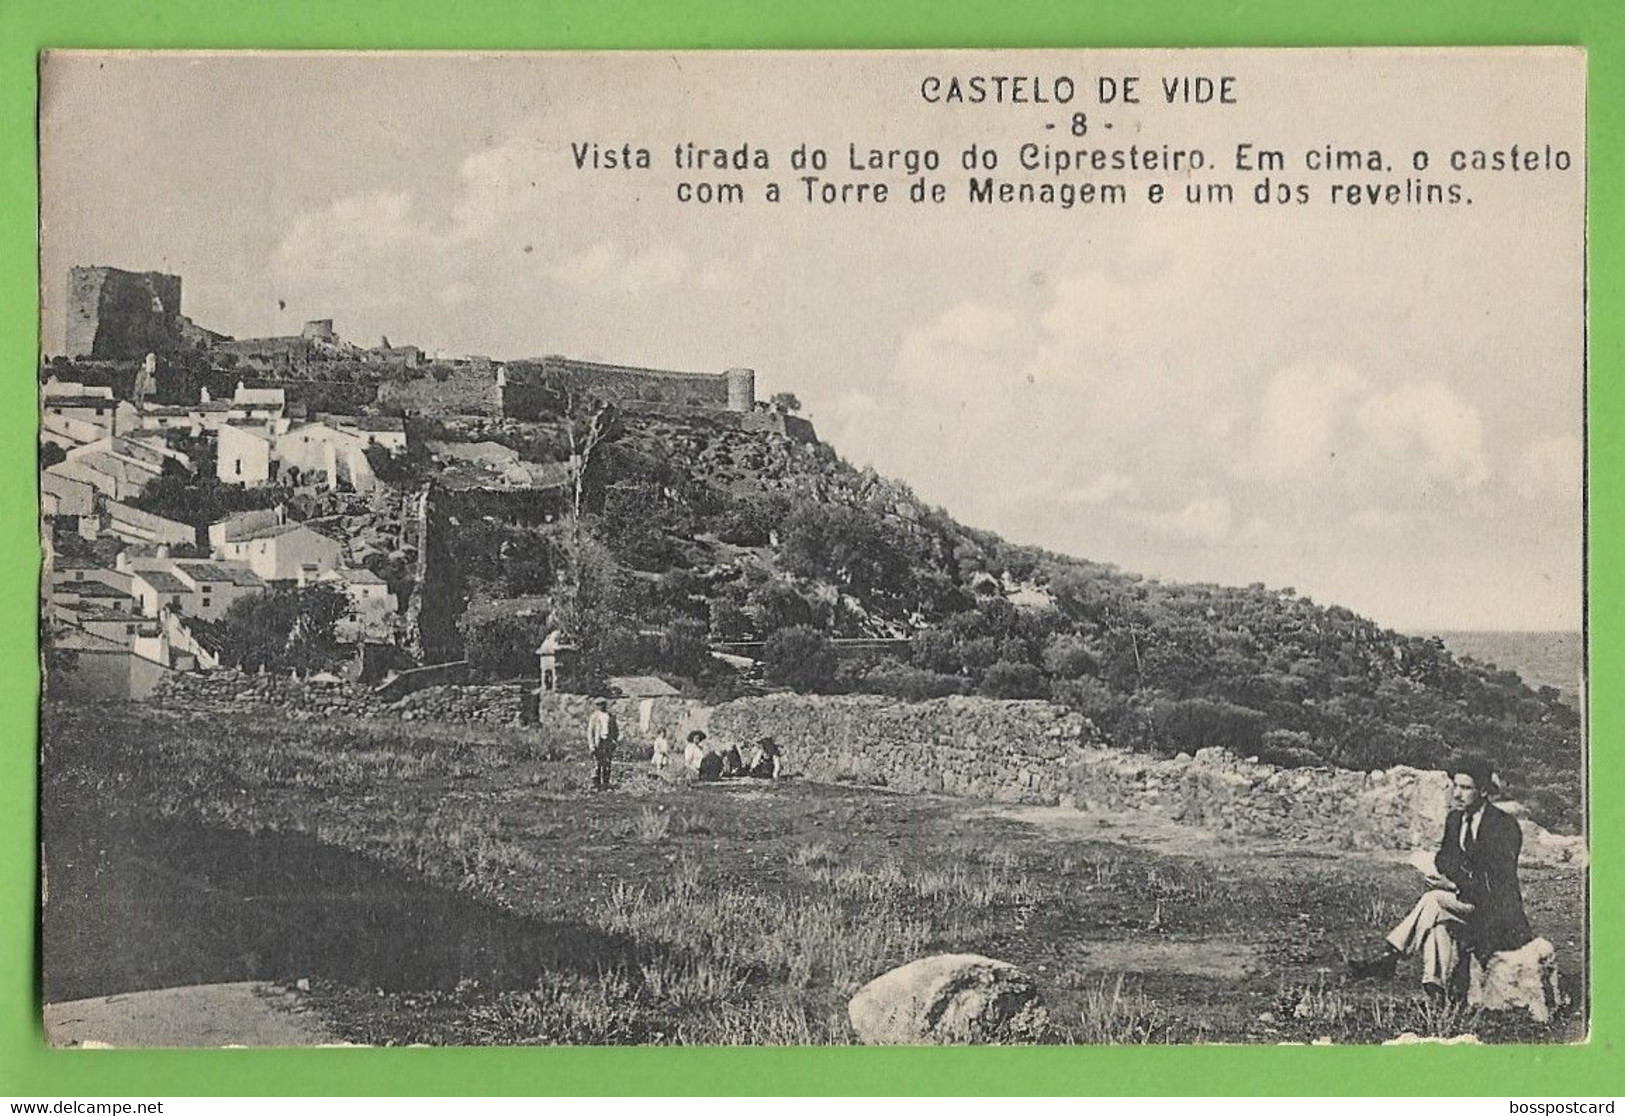 Castelo De Vide - Vista Tirada Do Largo Do Cipresteiro - Castelo. Portalegre. Portugal. - Portalegre